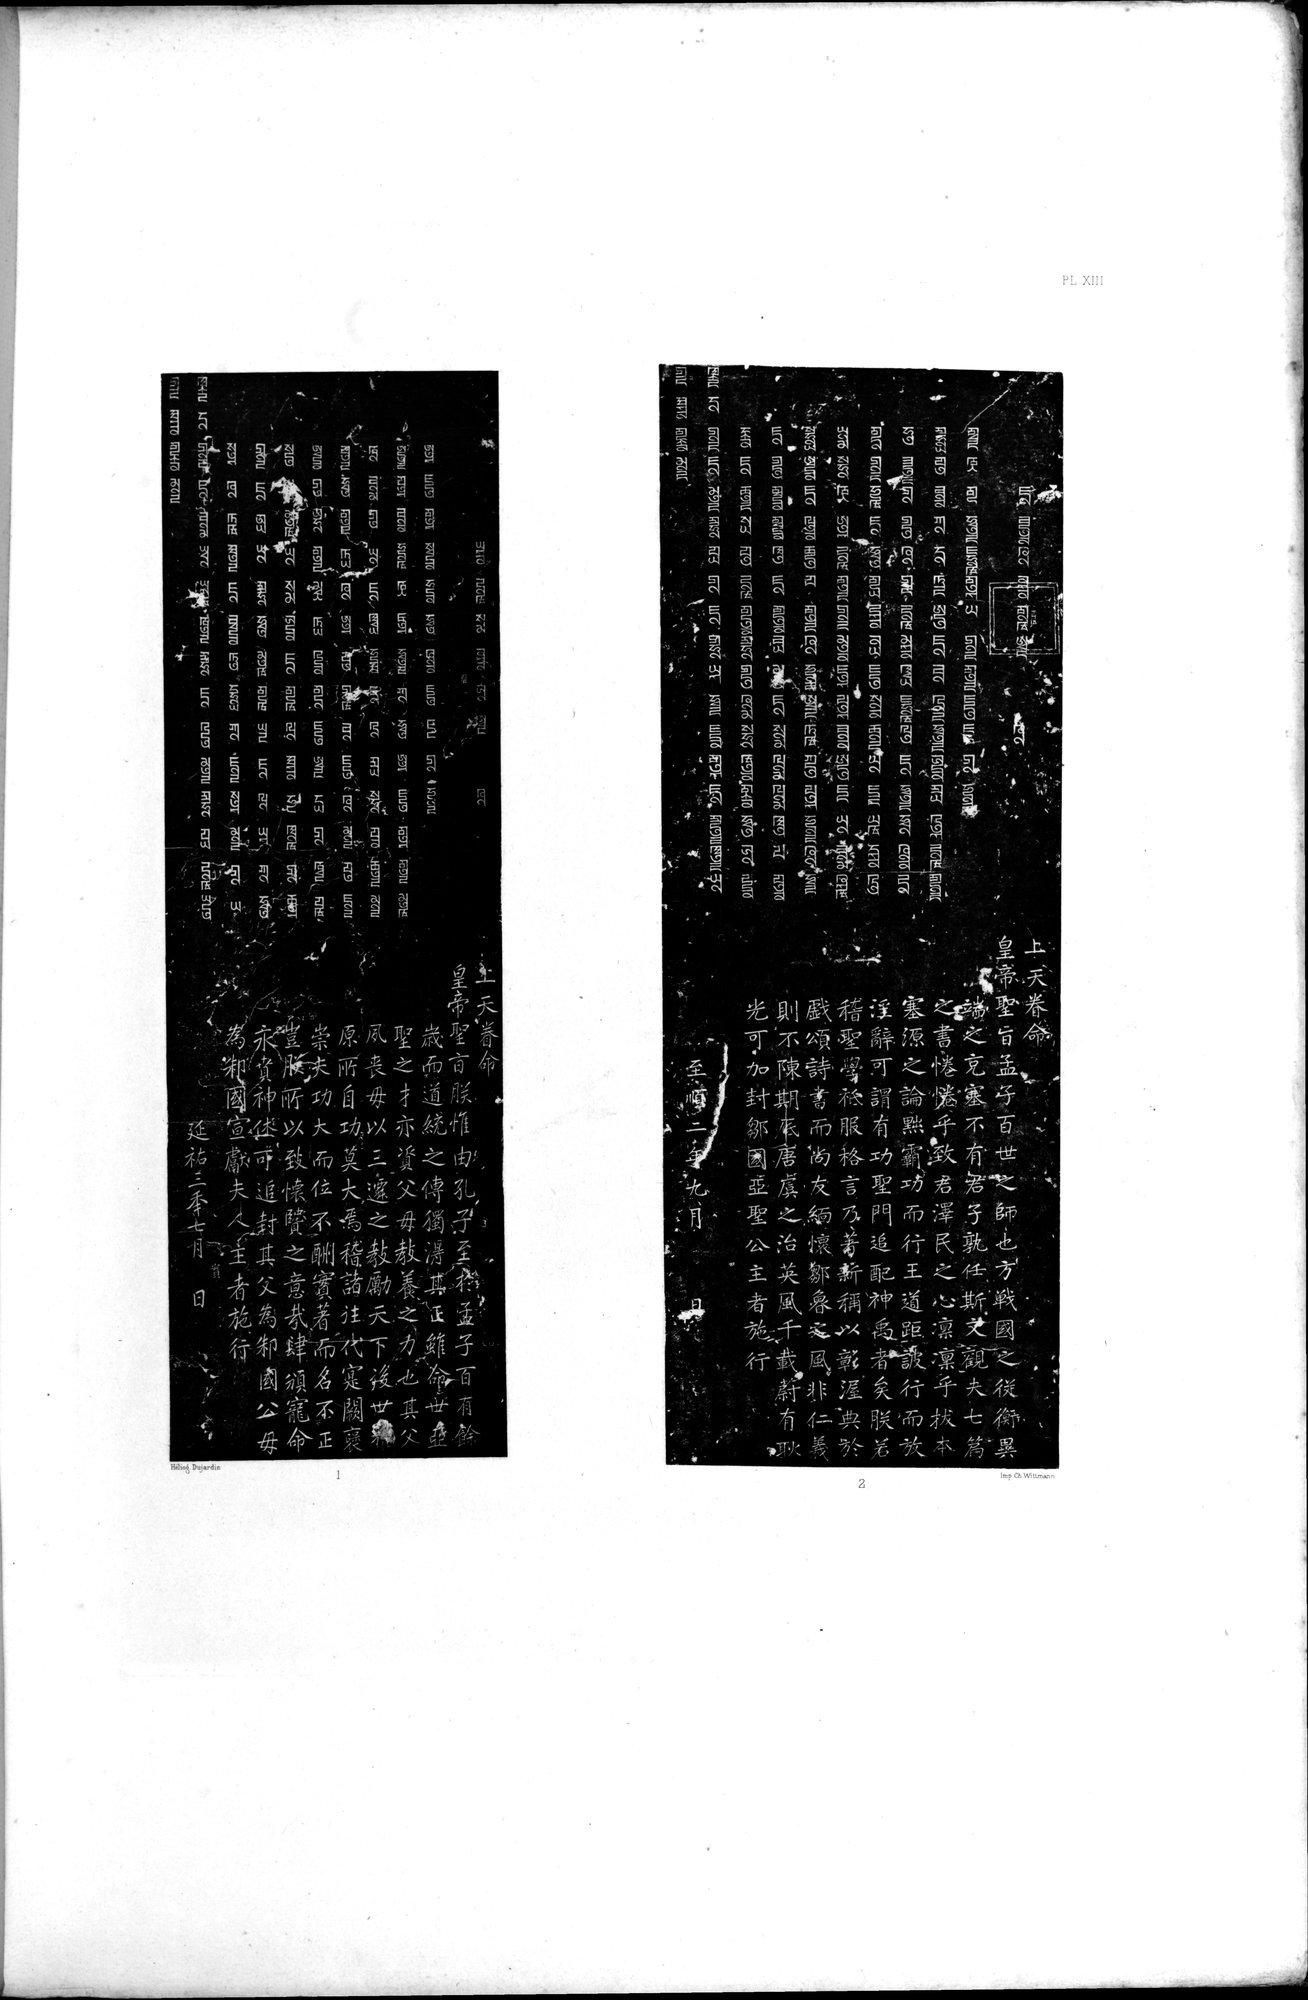 Documente de l'Époque Mongole des XIIIe et XIVe Siècle : vol.1 / Page 43 (Grayscale High Resolution Image)